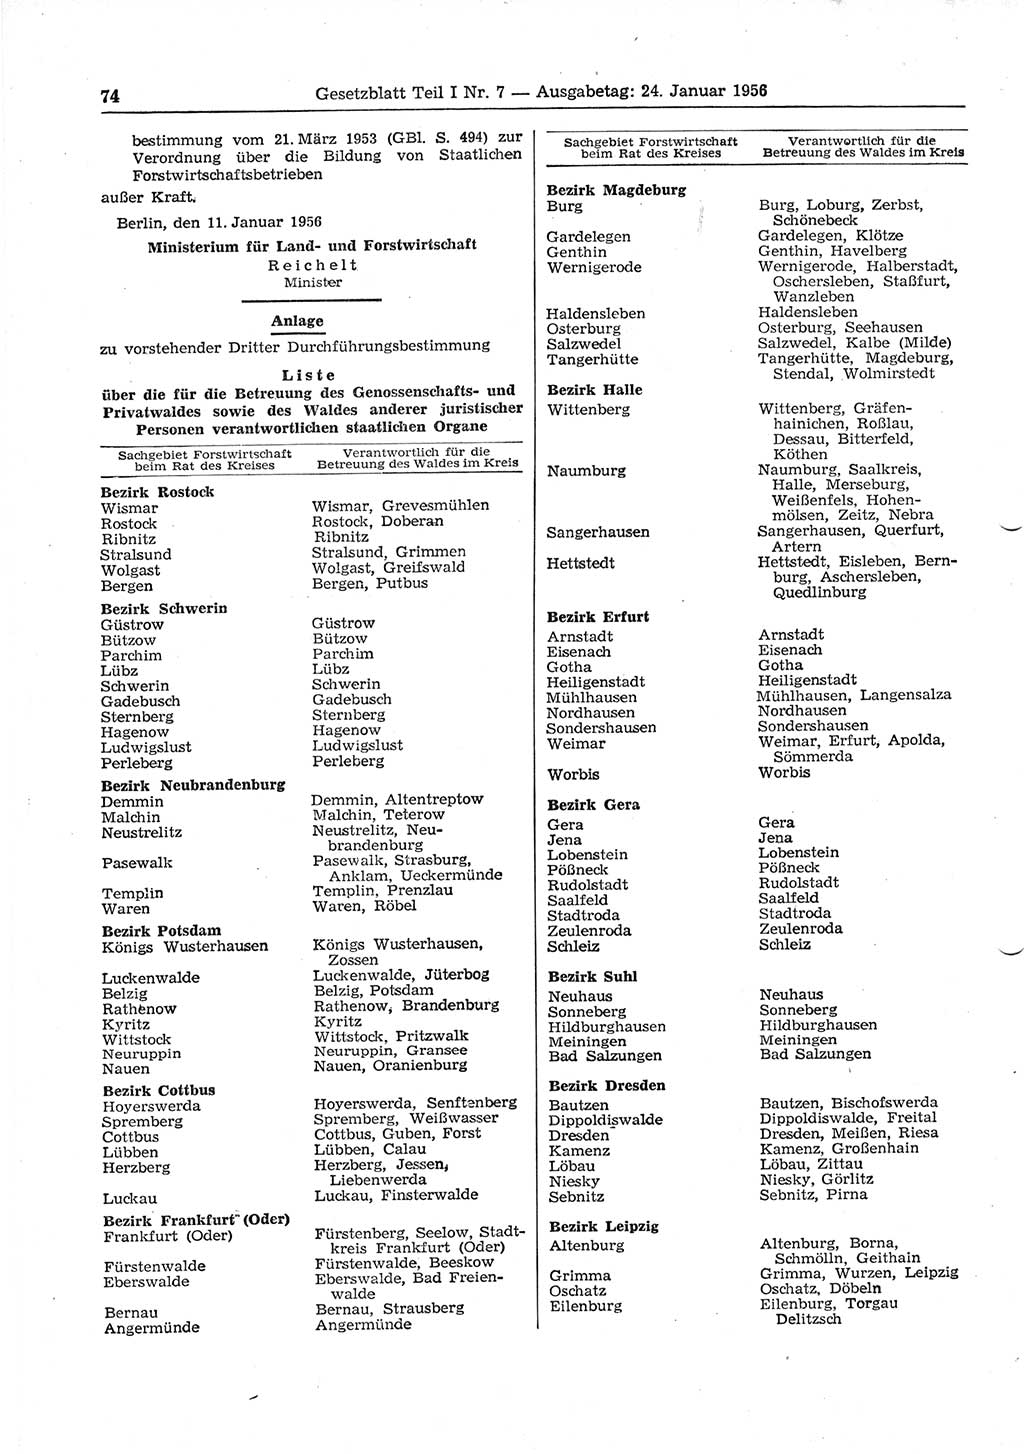 Gesetzblatt (GBl.) der Deutschen Demokratischen Republik (DDR) Teil Ⅰ 1956, Seite 74 (GBl. DDR Ⅰ 1956, S. 74)